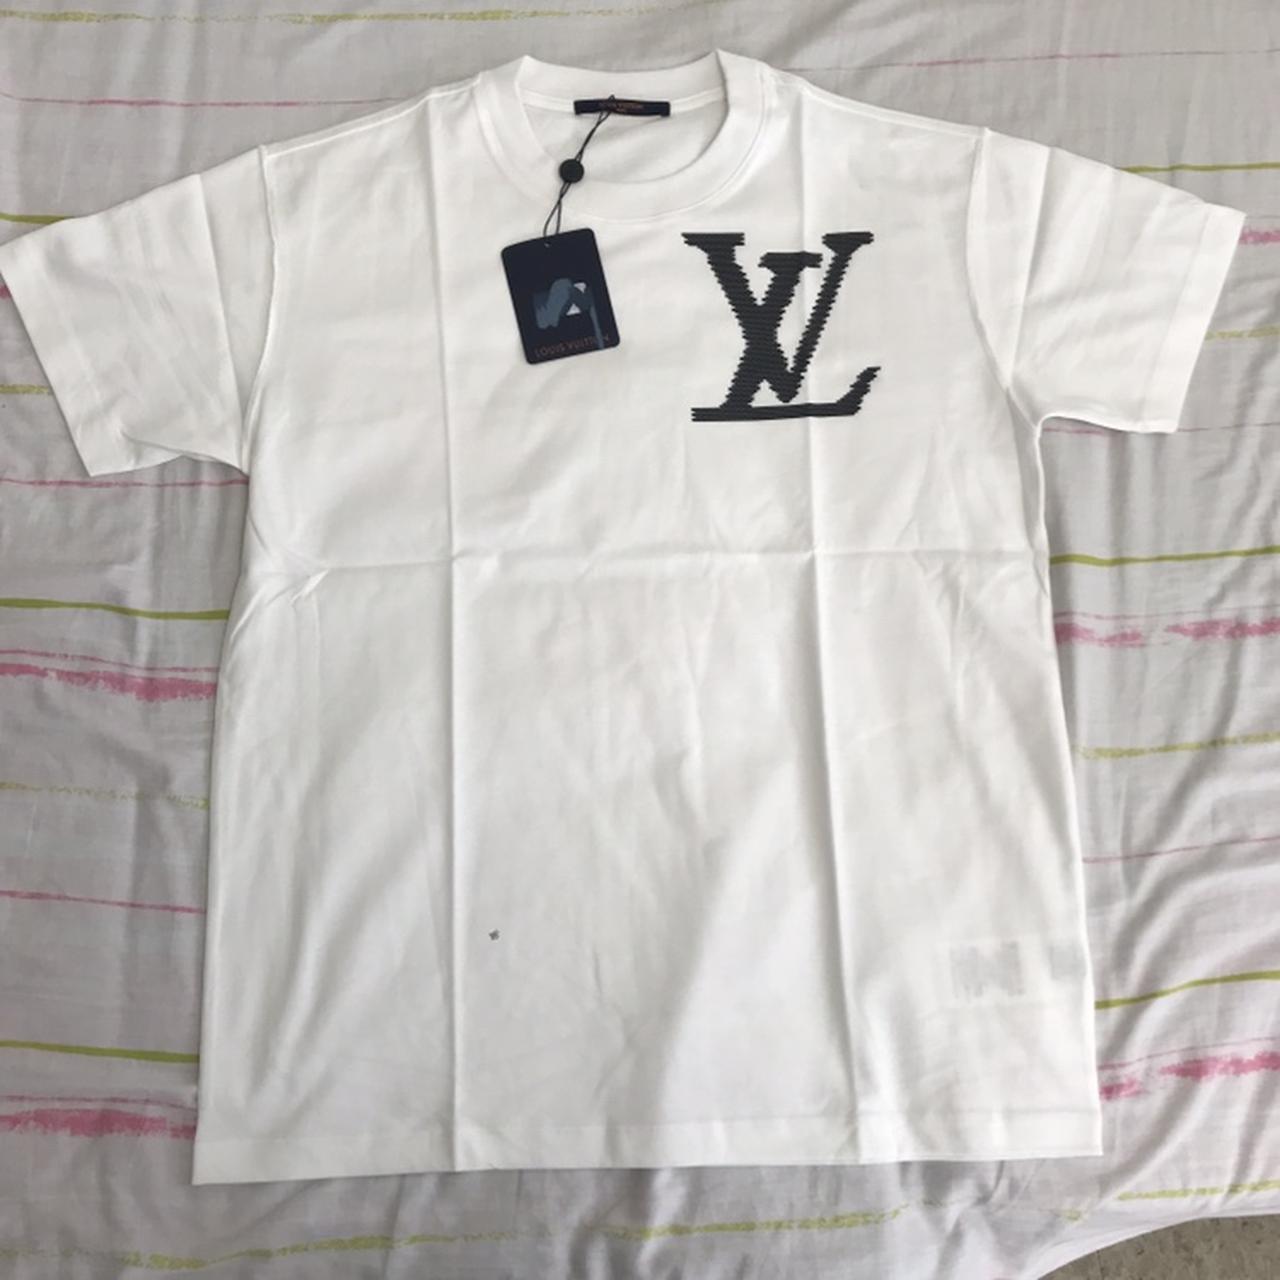 Louis Vuitton T-shirt 100% authentic. Size - Depop